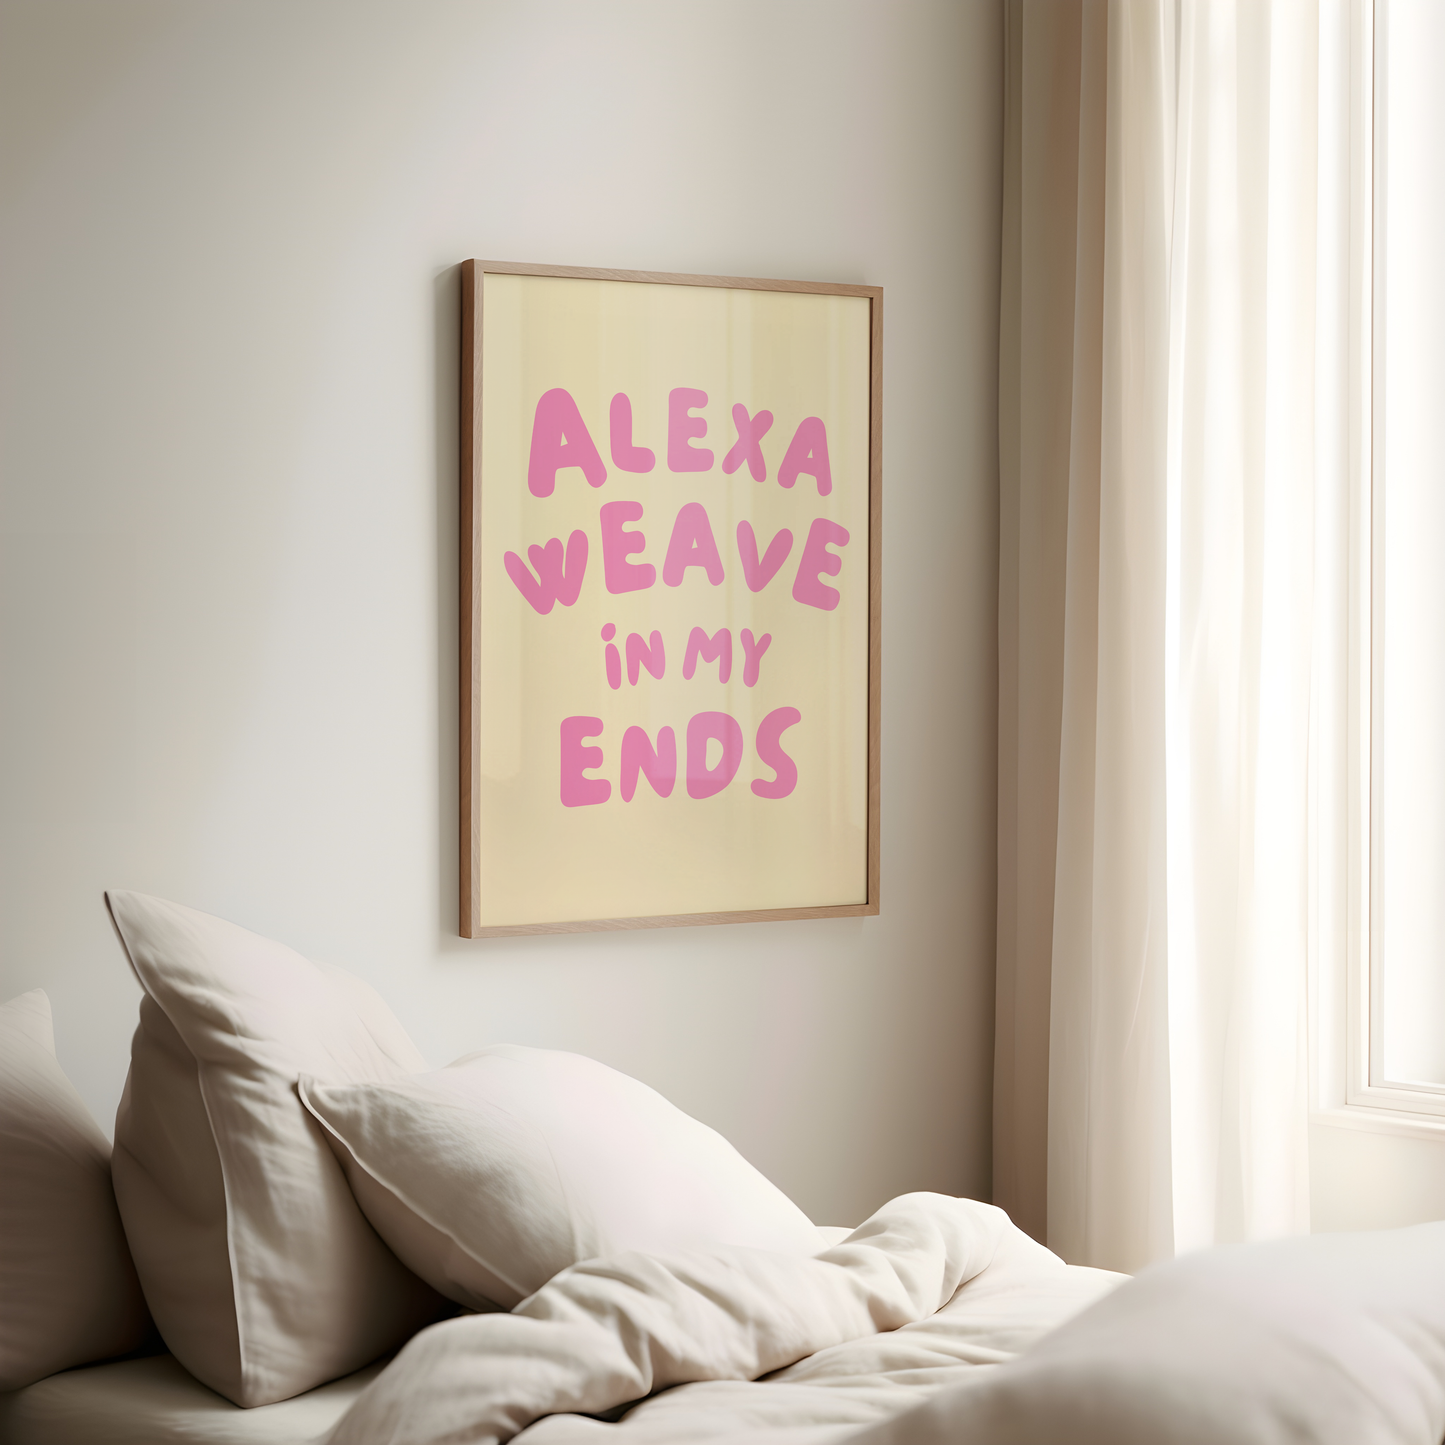 Alexa weave in my ends digital art print cream pink